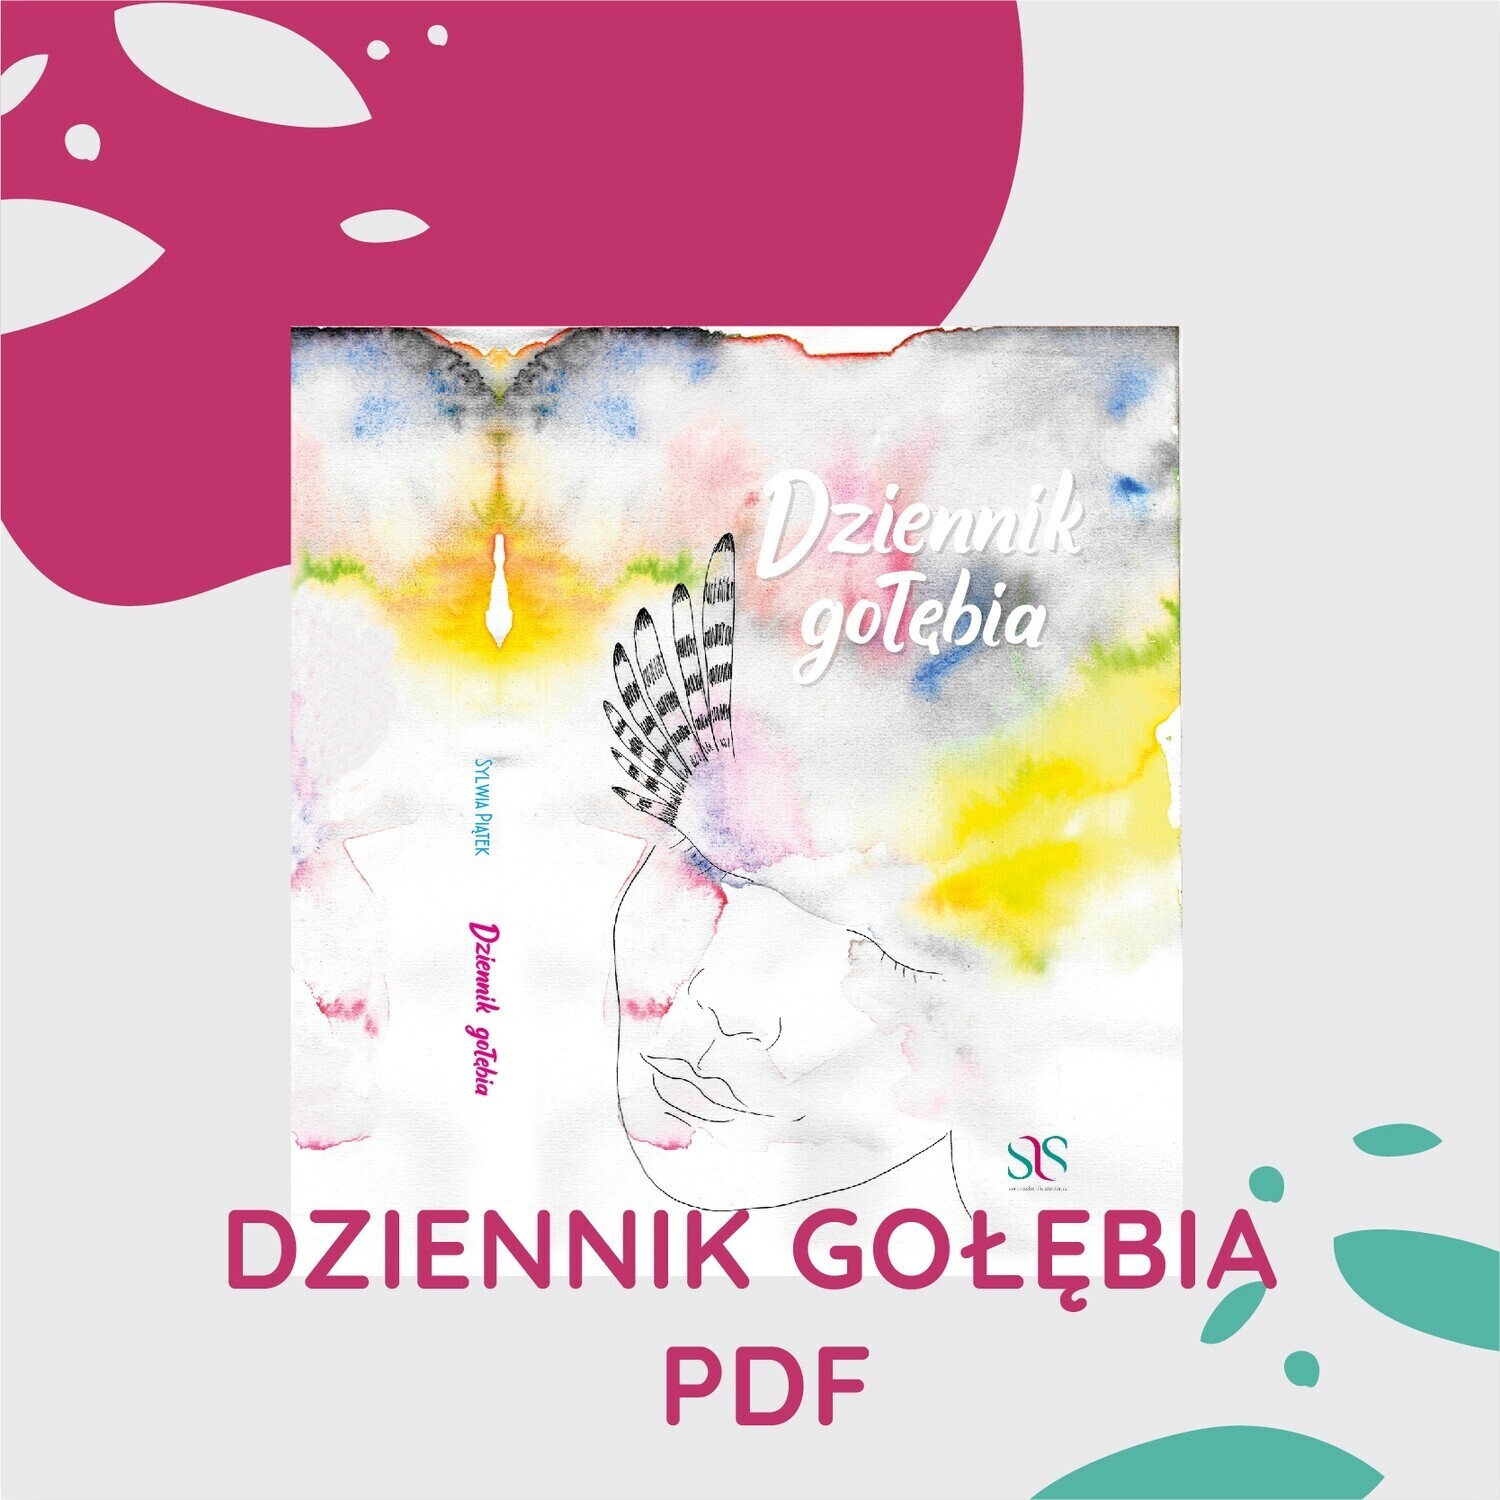 Dziennik gołębia pdf